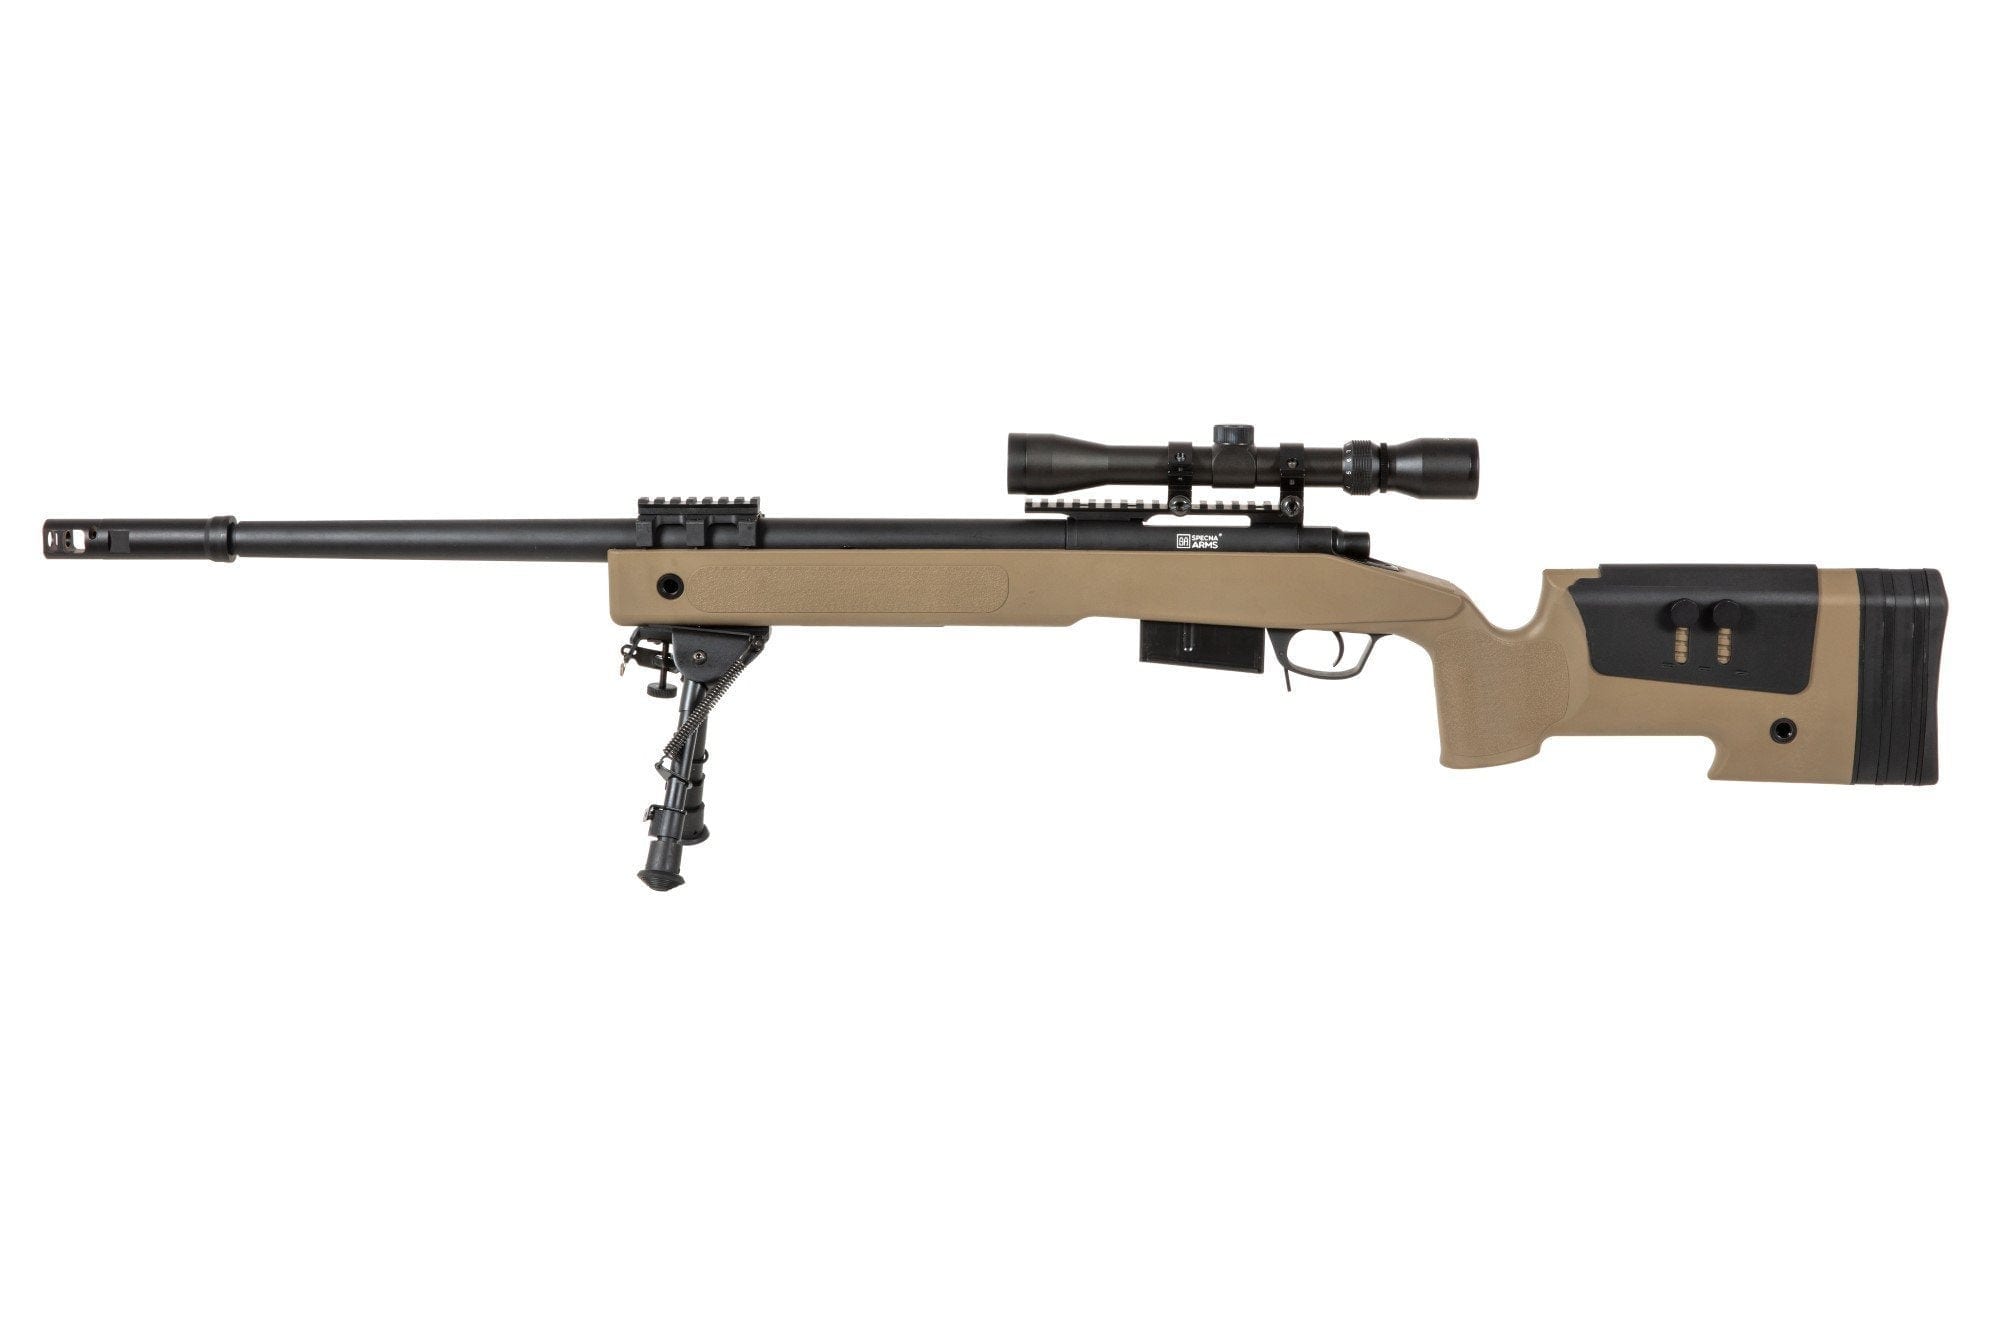 SA-S03 CORE™ High Velocity Sniper Rifle Replica with Scope and Bipod - tan